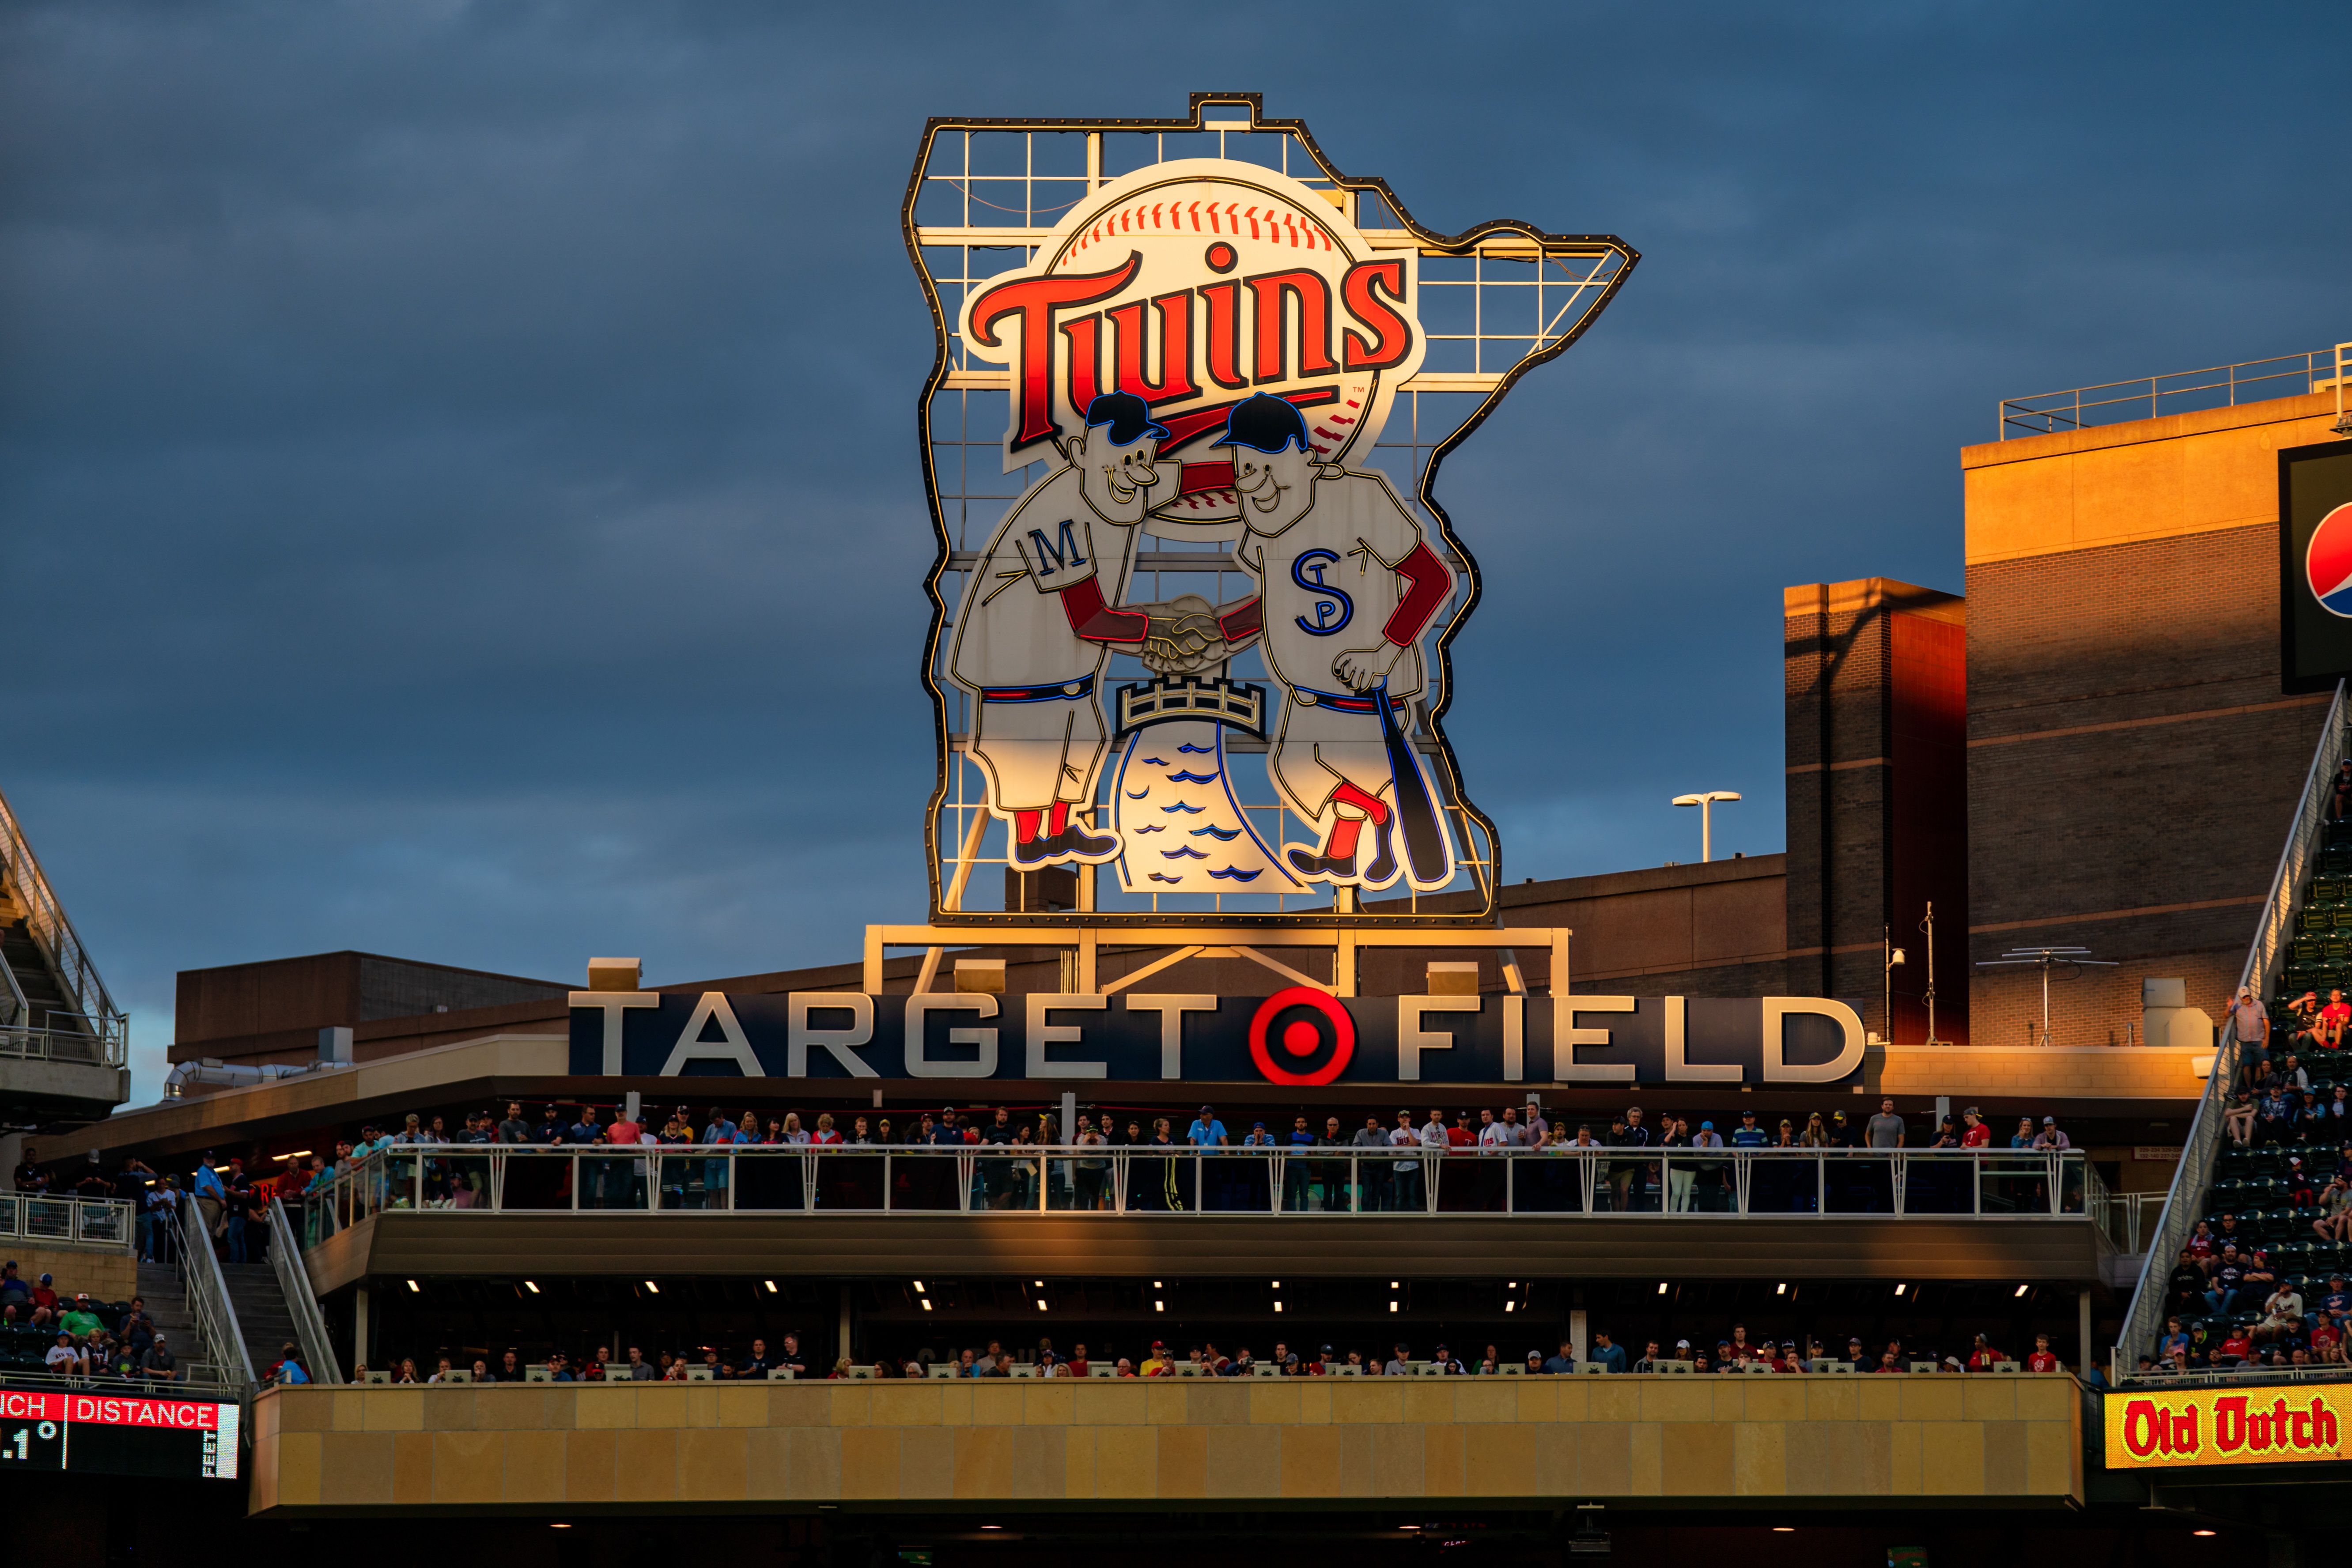 The Target Field stadium in Minneapolis.